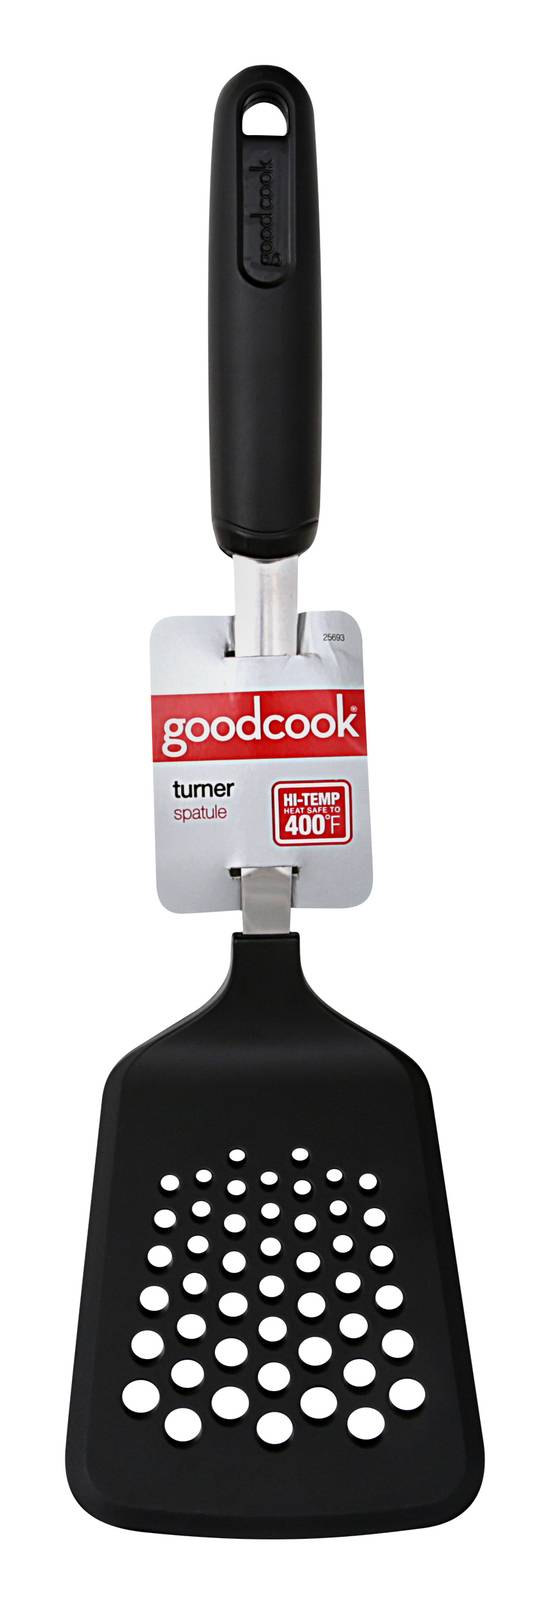 Goodcook Turner Spatule